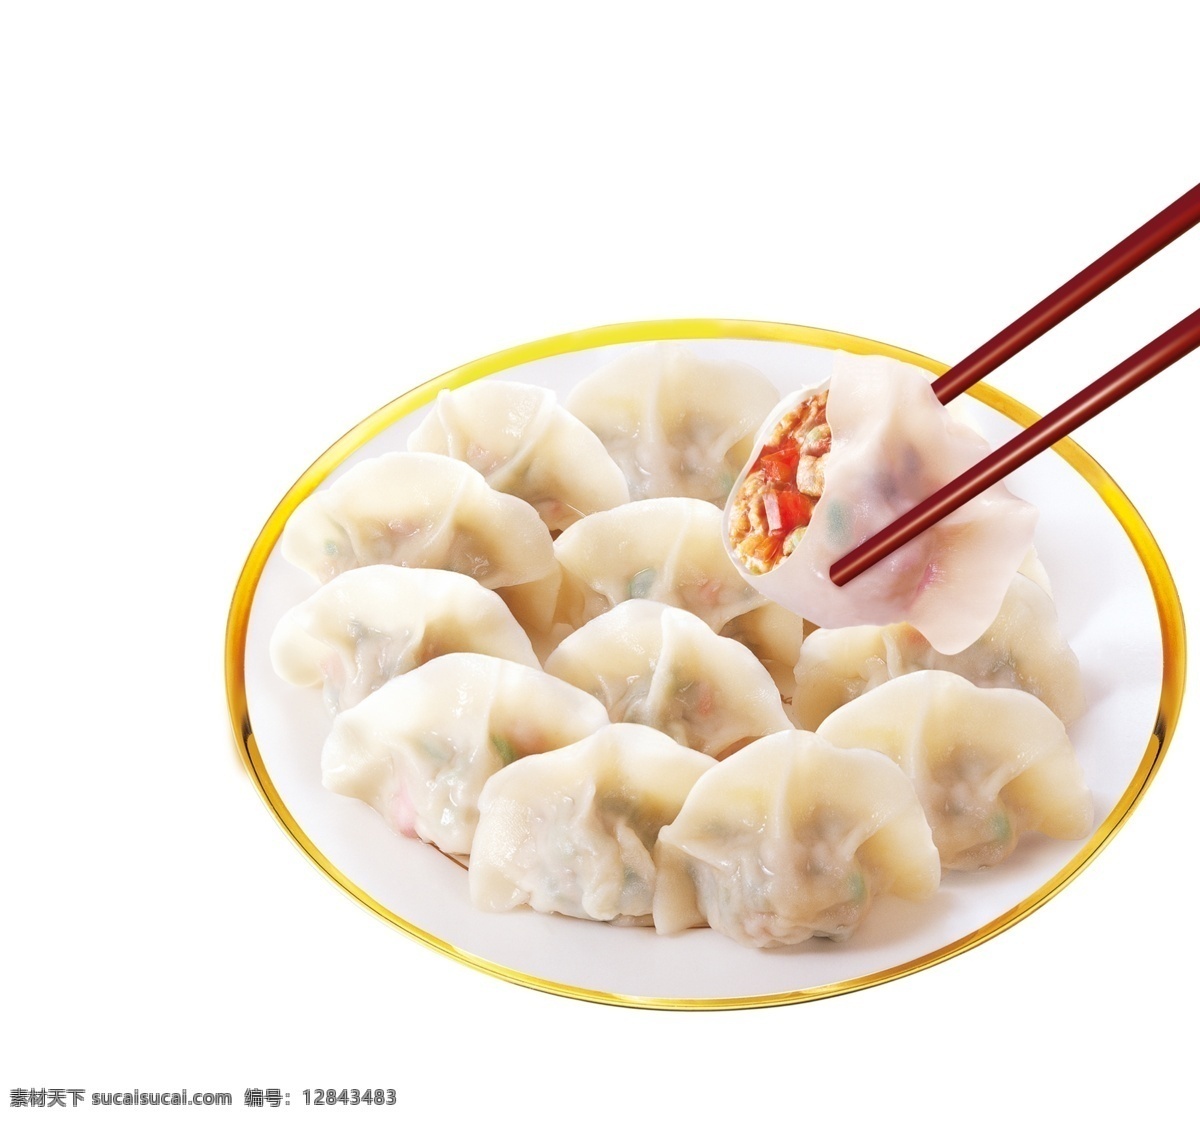 盘 美味 饺子 筷子 食物 团圆 节日 肉馅